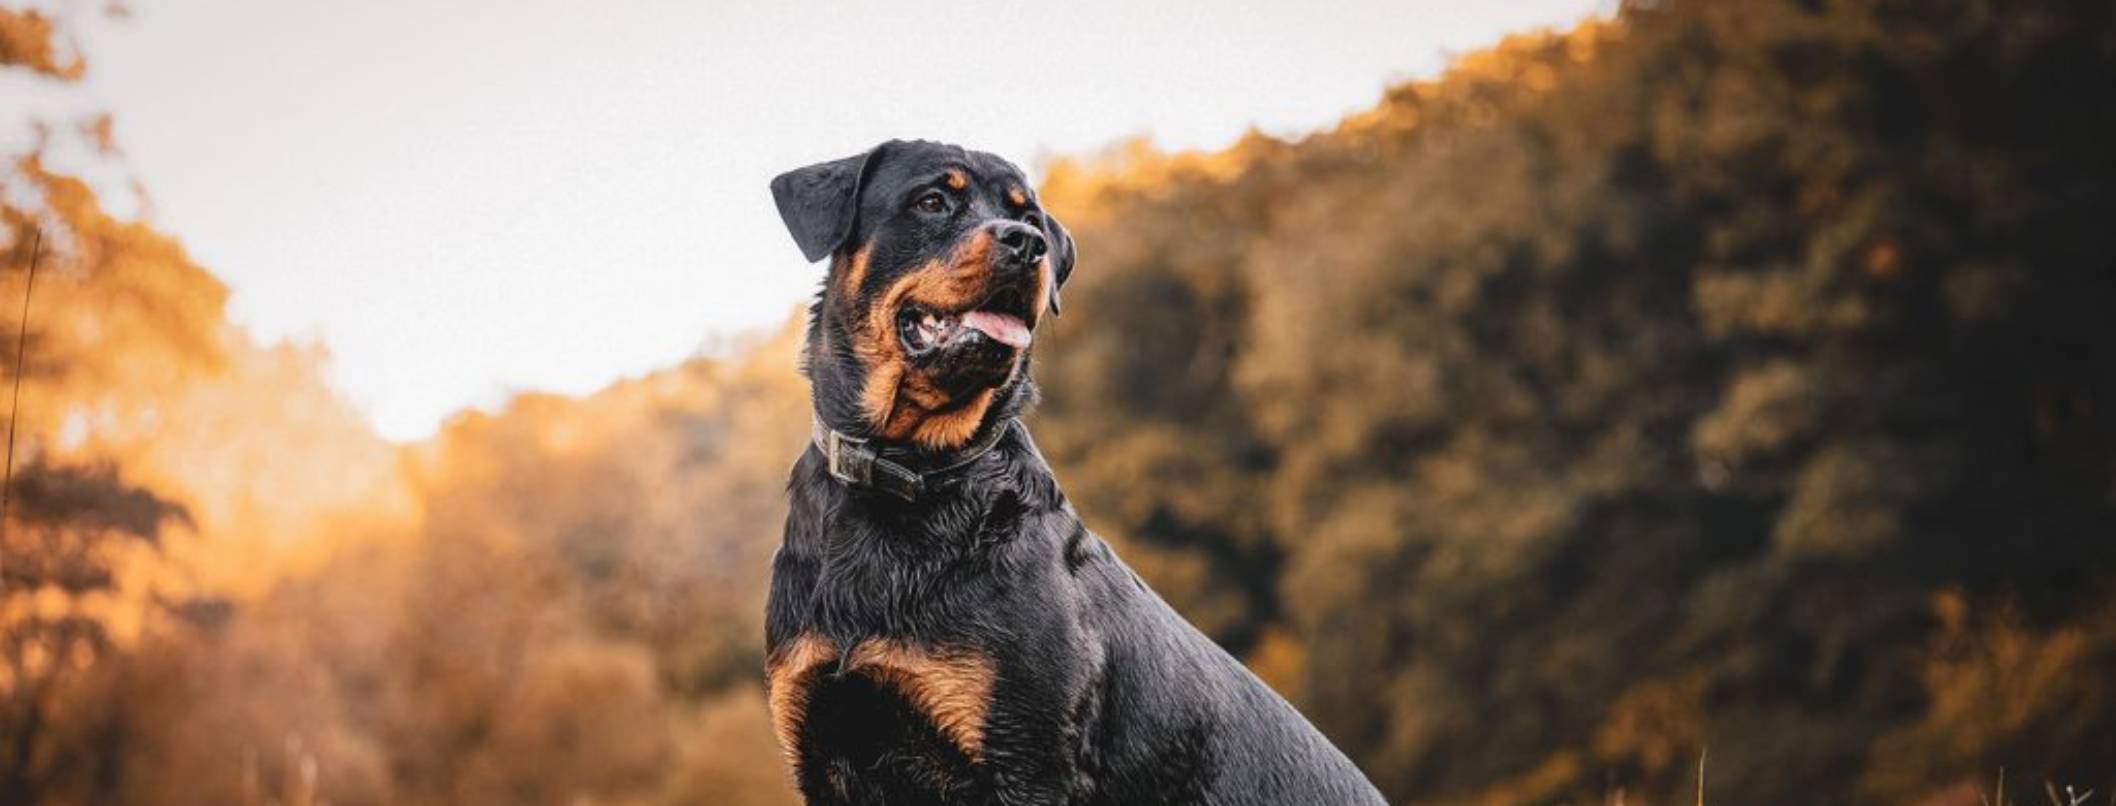 rottweiler comportamento e caratteristiche della razza canina